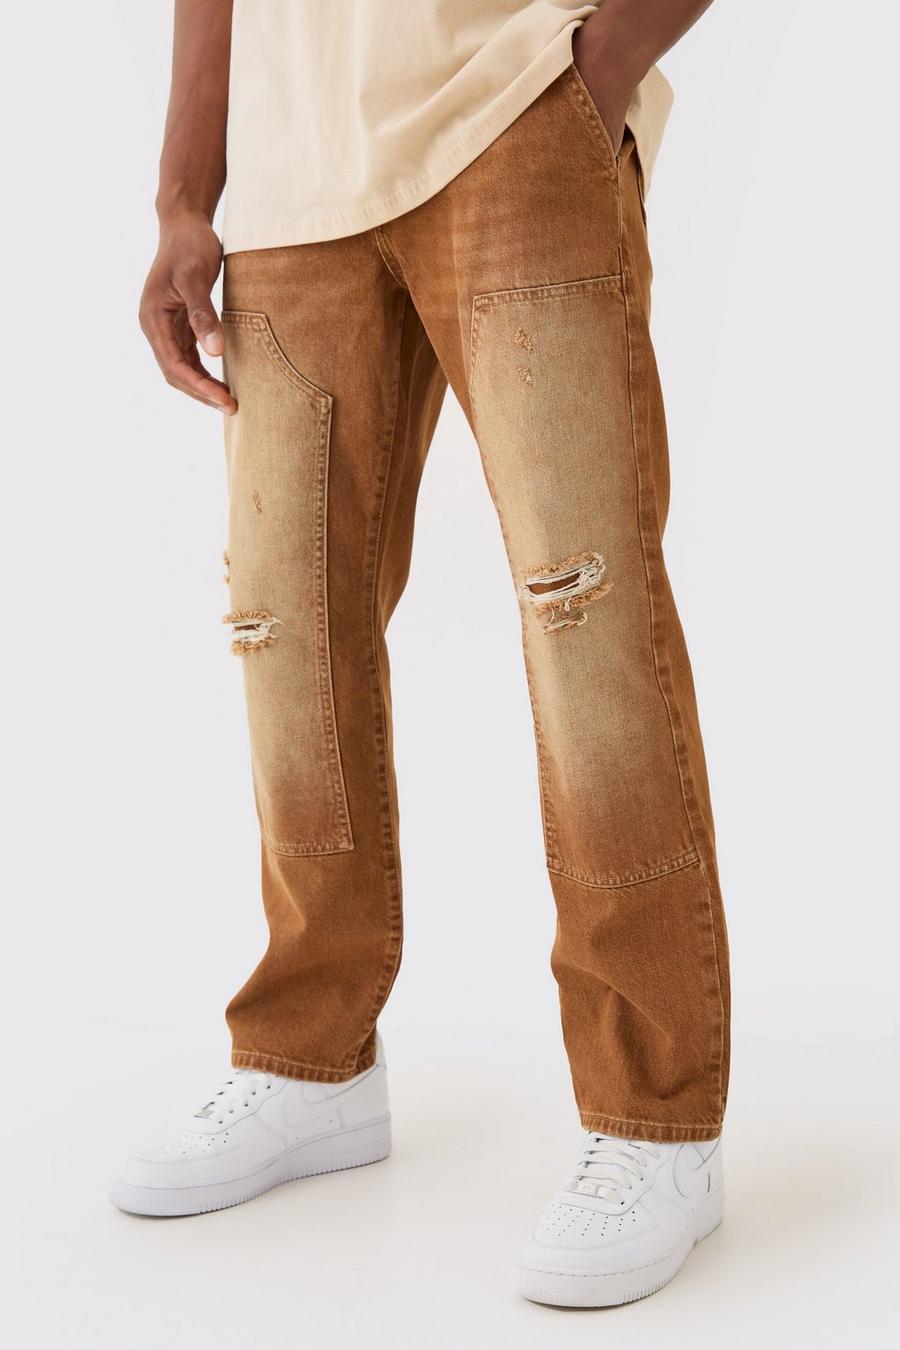 Lockere Jeans in Braun, Brown